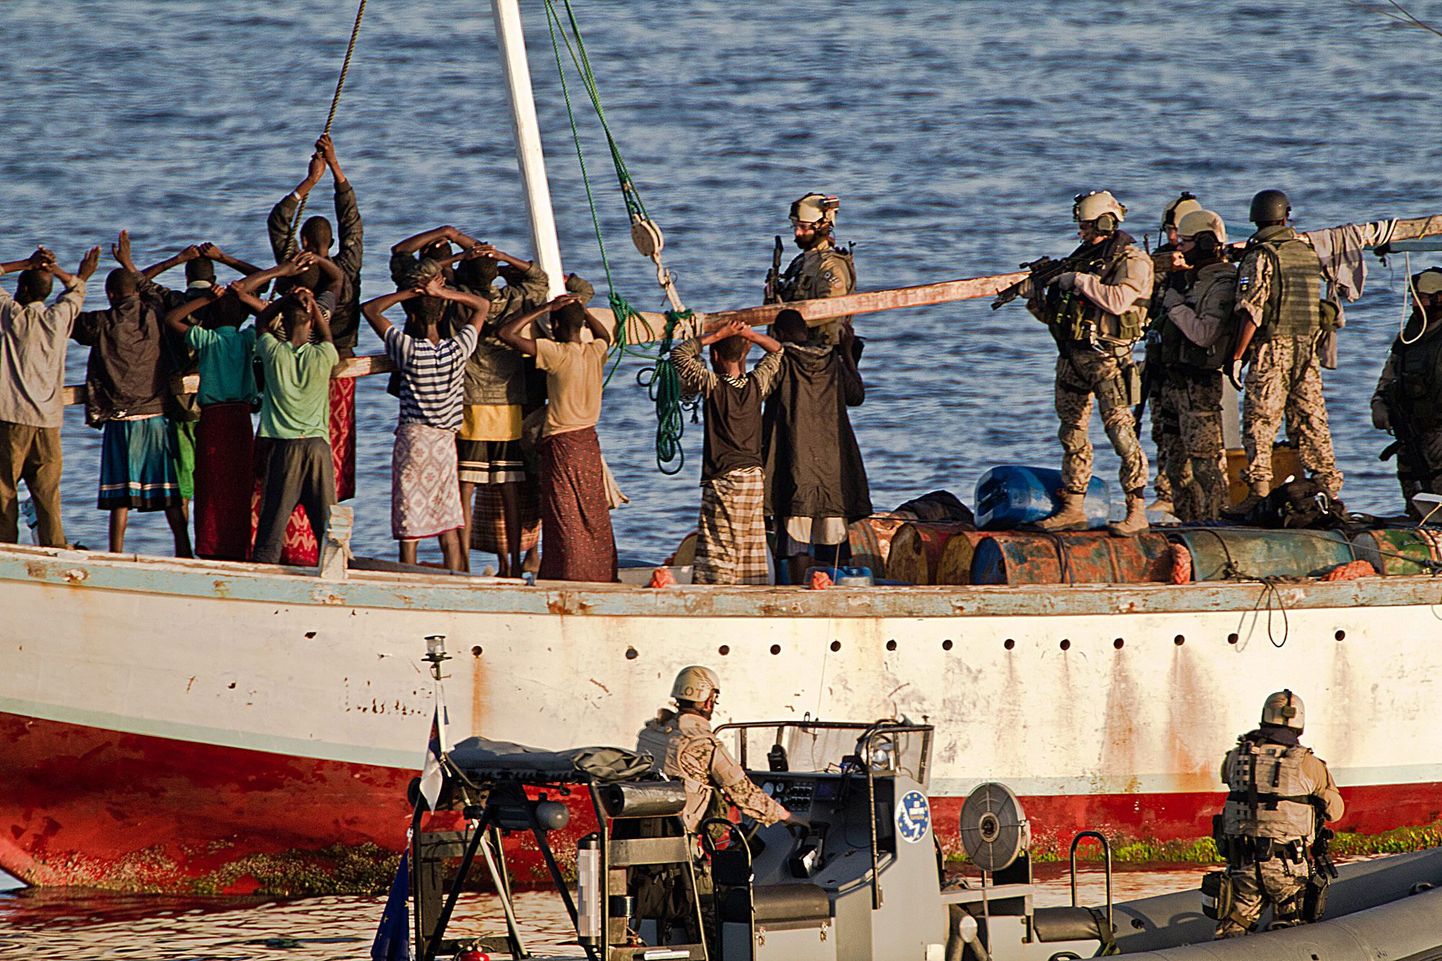 Pohjanmaa meeskonnaliikmed pidasid arvatavate Somaalia piraatide laeva kinni 6. aprillil.